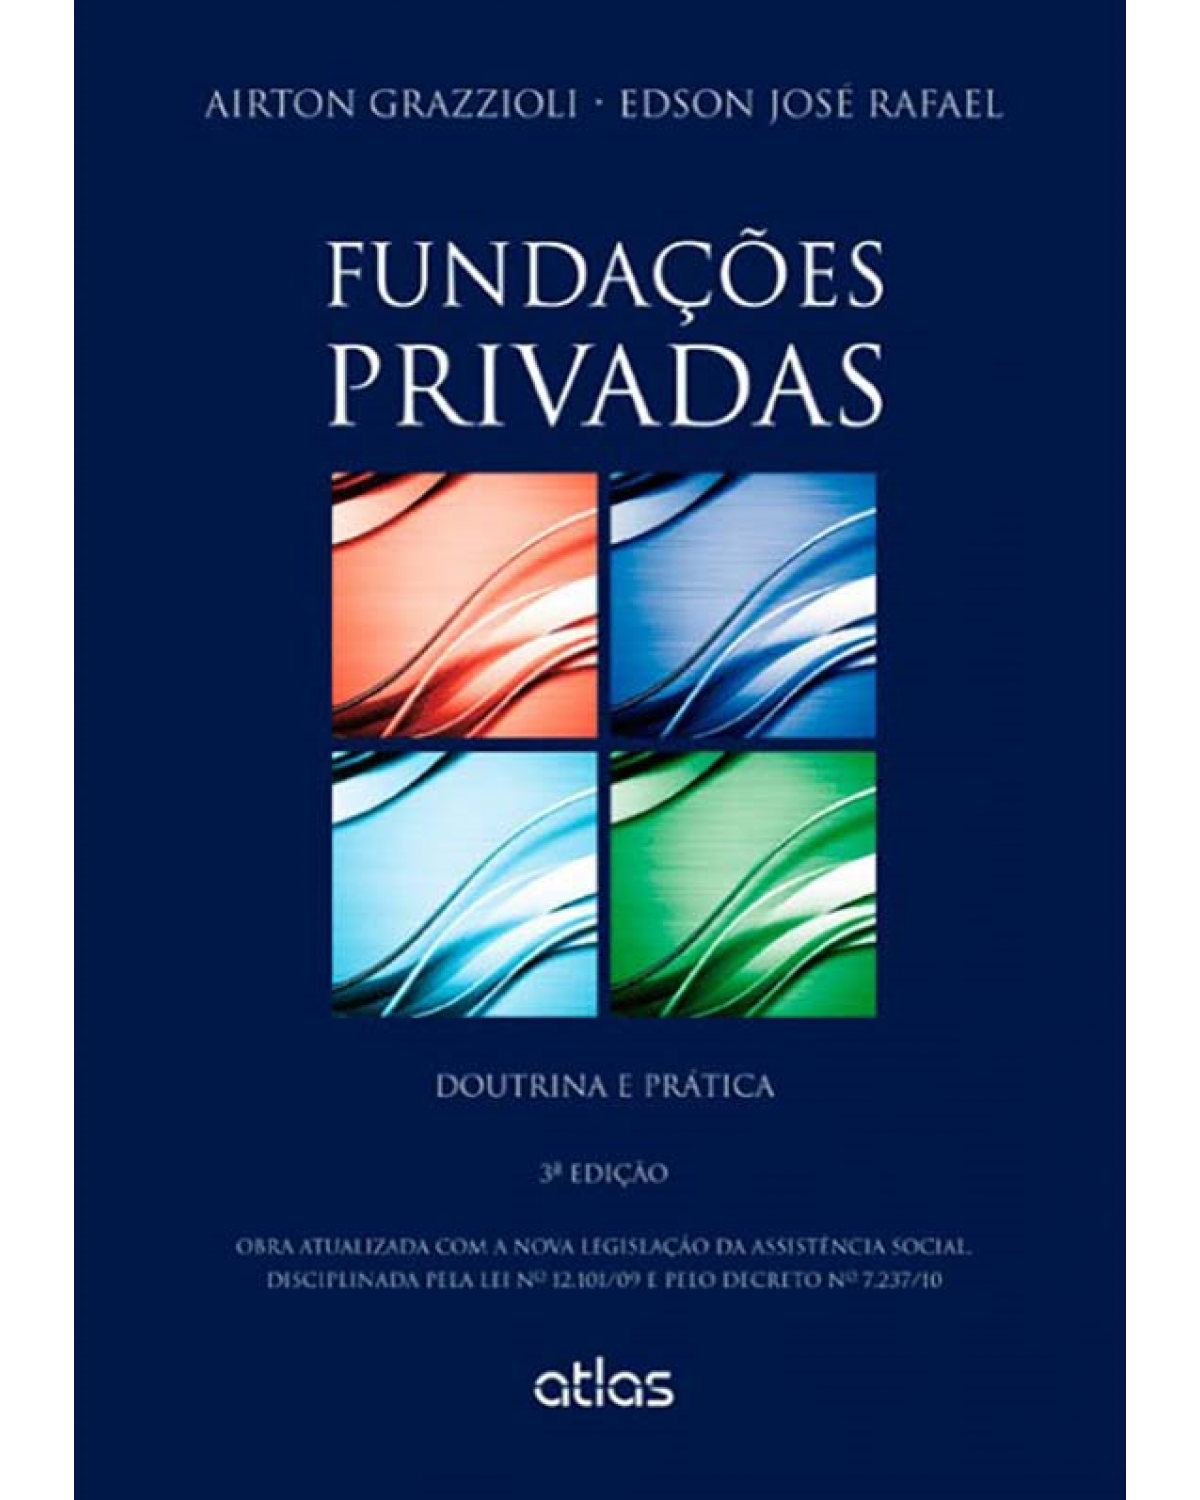 Fundações privadas - Doutrina e prática - 3ª Edição | 2013